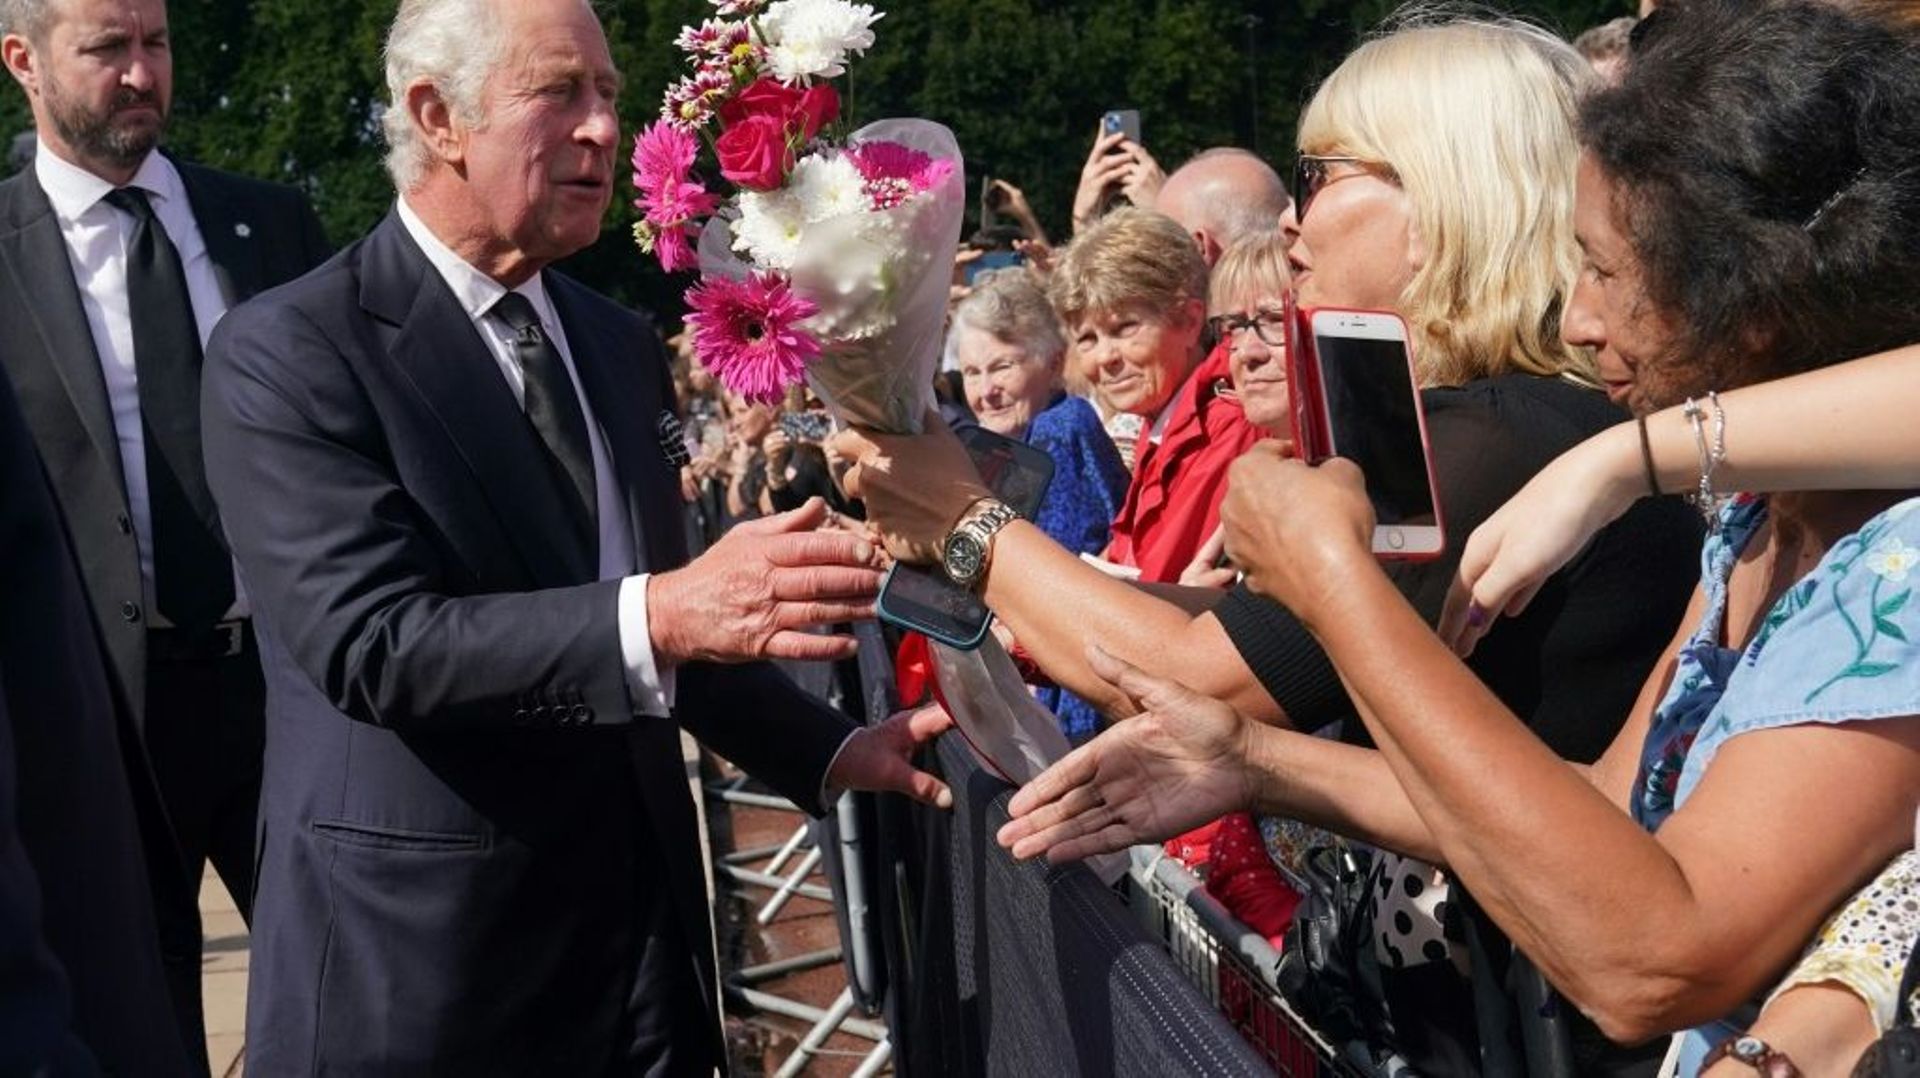 Le roi Charles III salue la foule à son arrivée au palais de Buckhingham, au lendemain du décès de la reine Elizabeth II, le 9 septembre 2022 à Londres